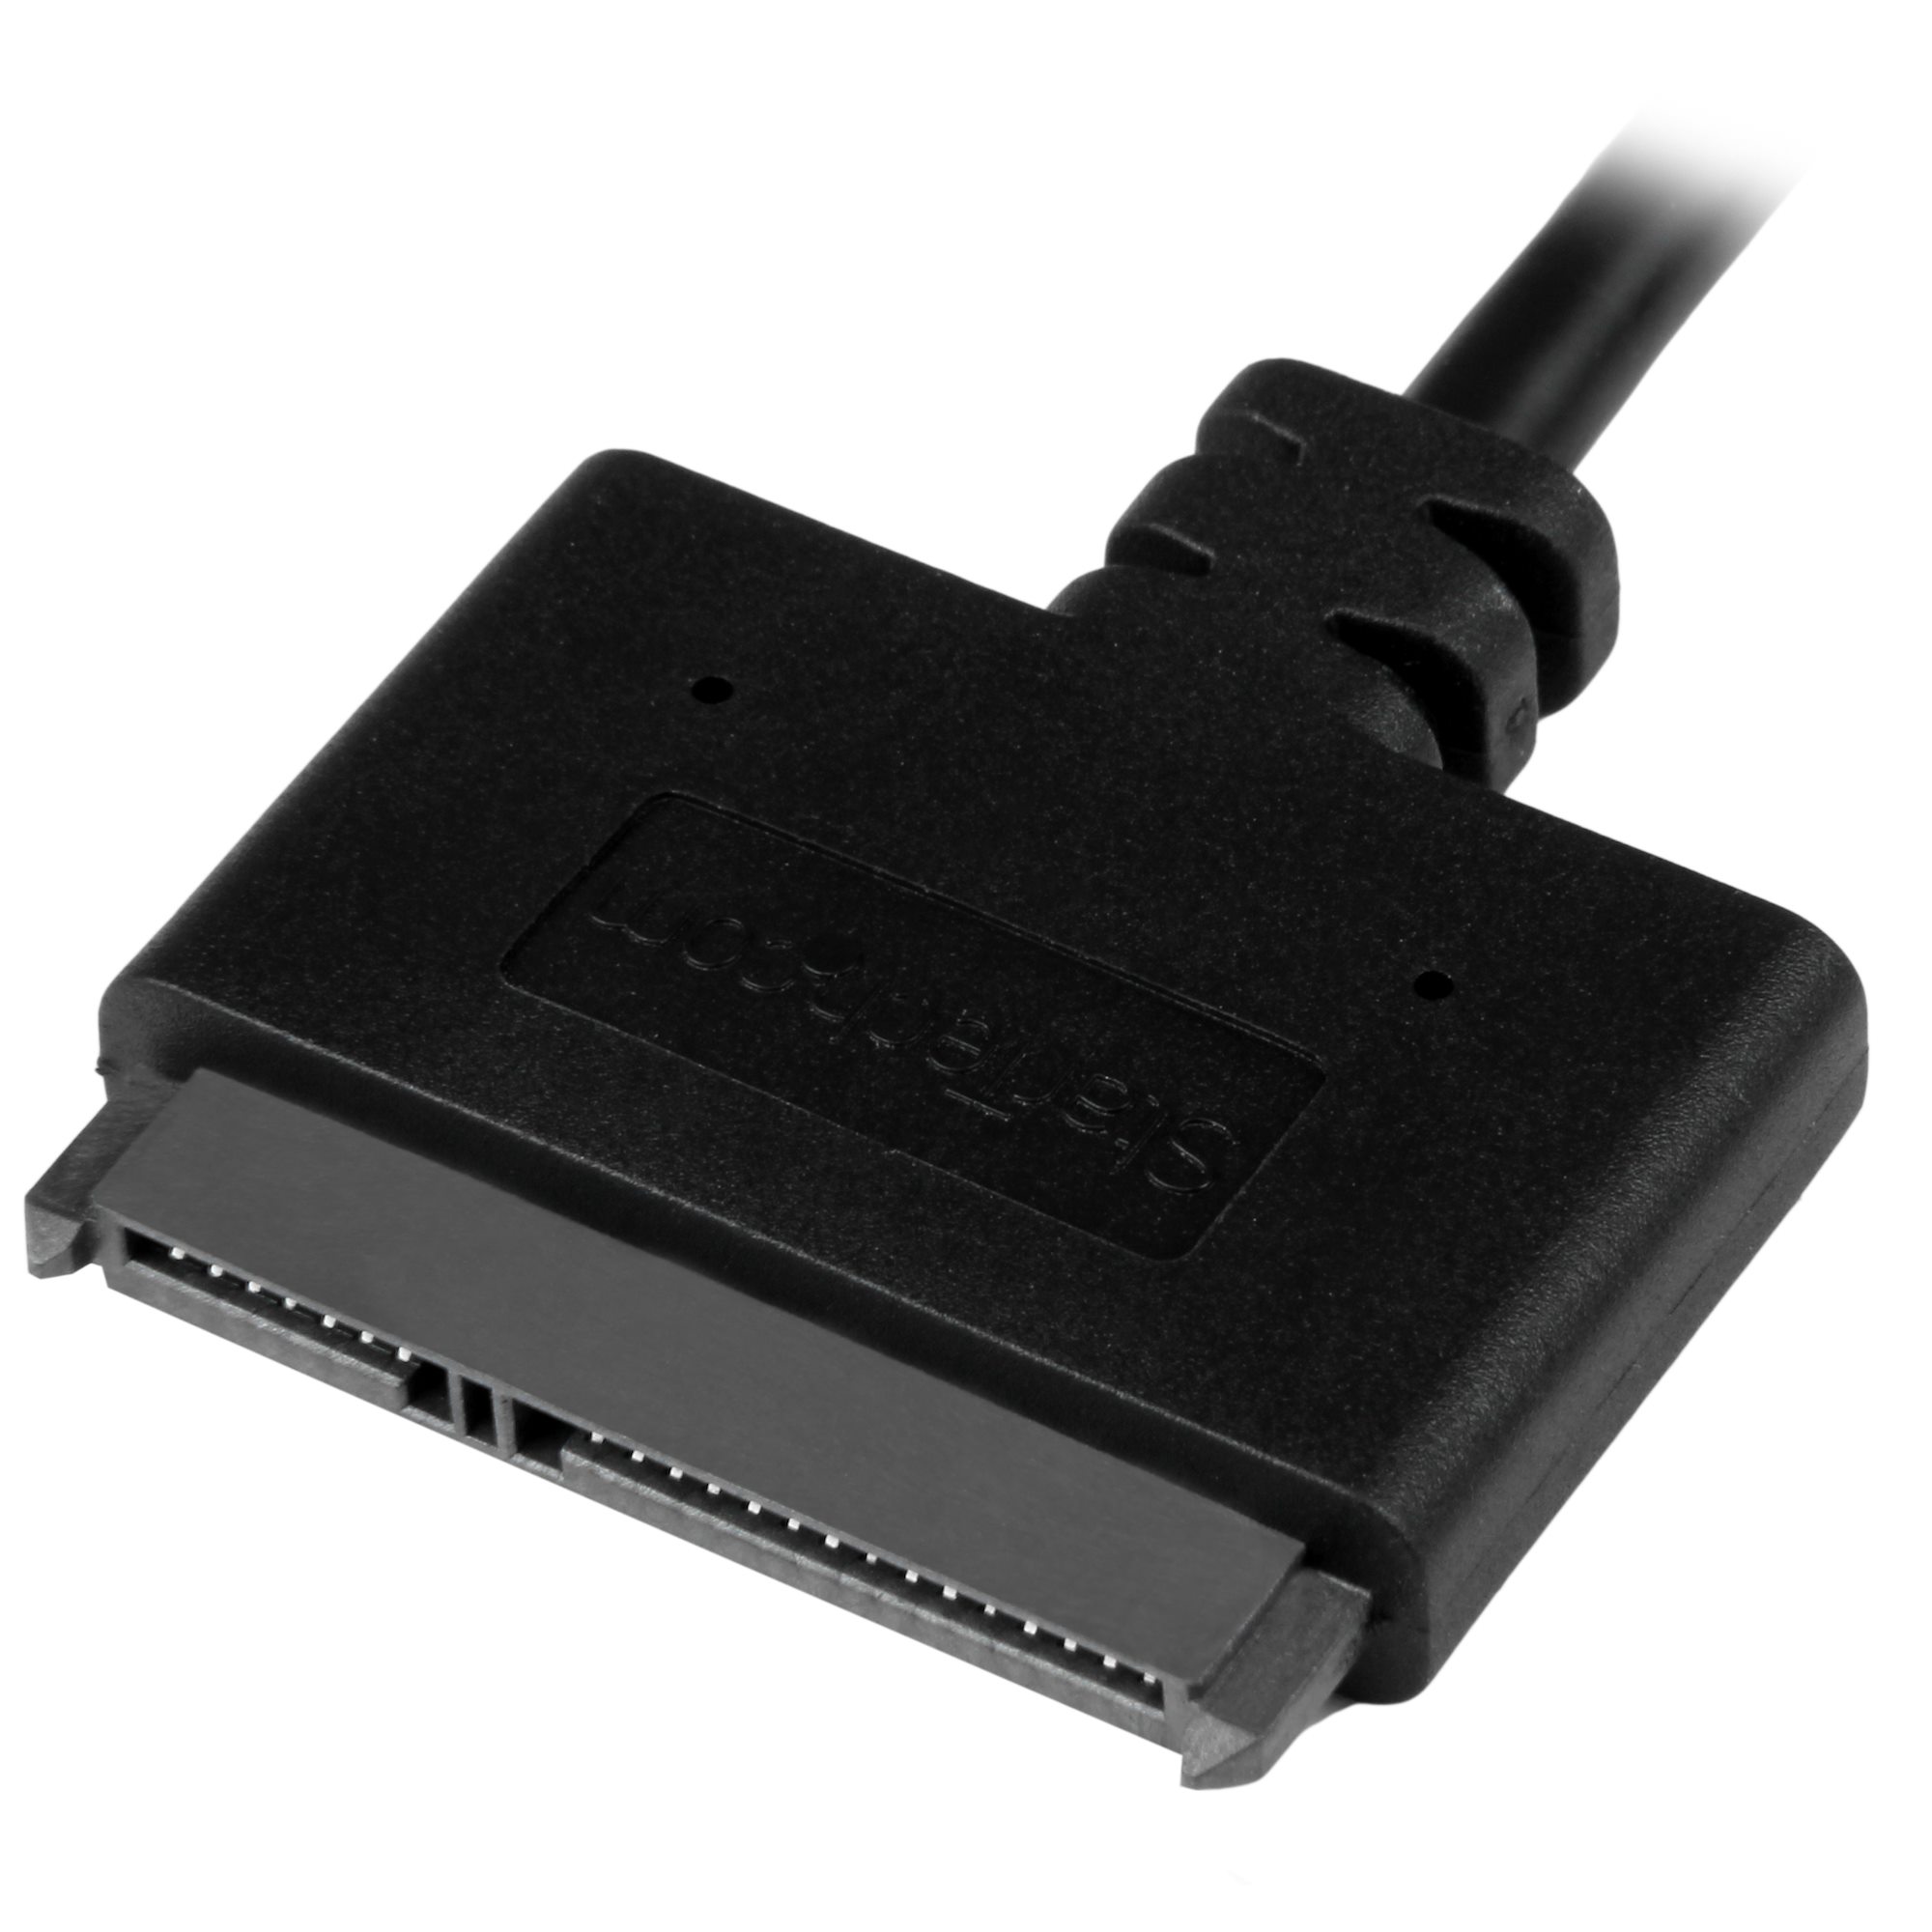 2.5インチSATA - USB 3.1 ケーブルアダプタ USB 3.1 Gen 2(10 Gbps)準拠